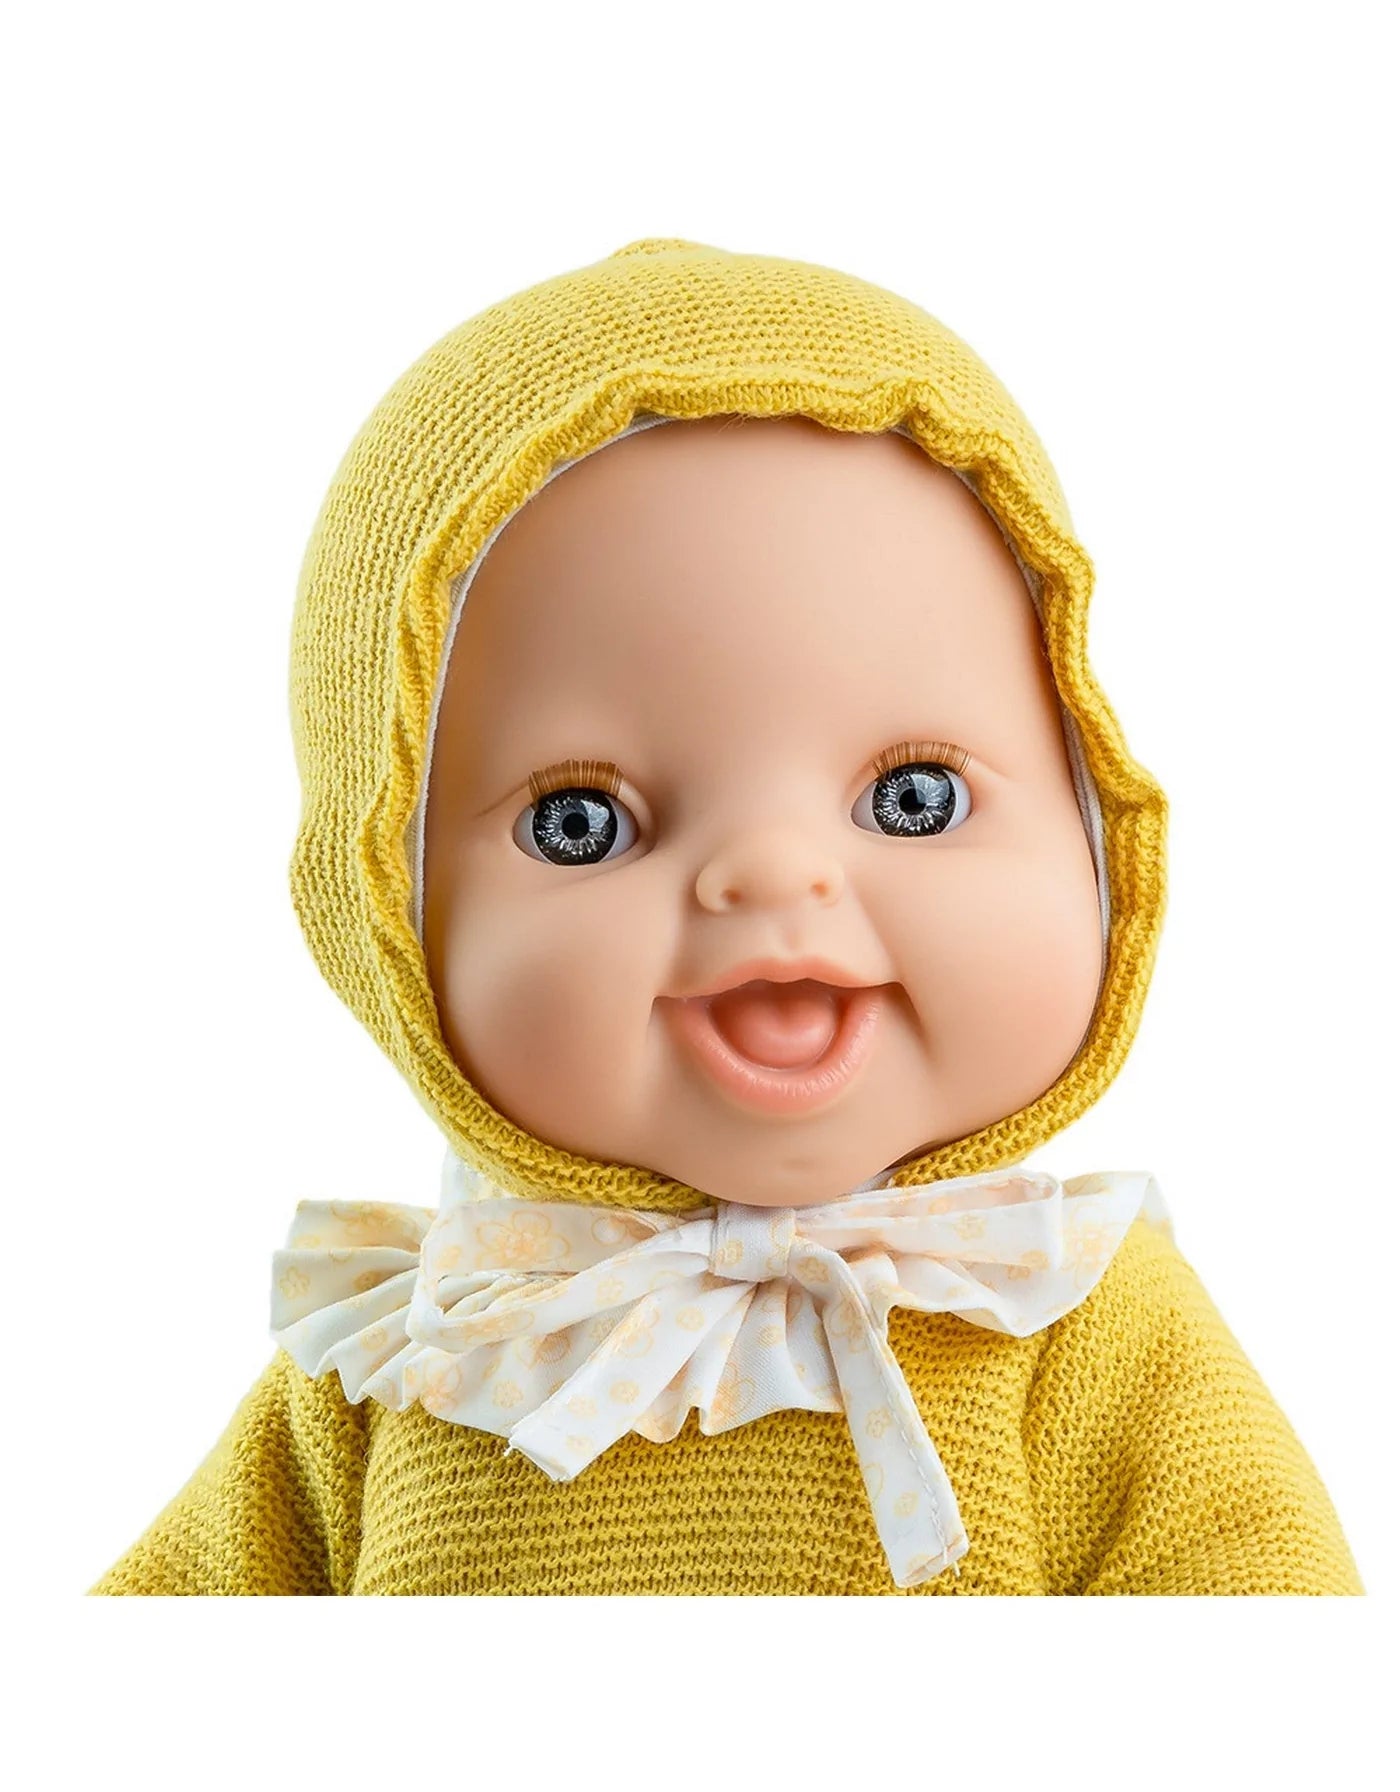 Chandail et bonnet moutarde avec short pour poupée Gordis Paola Reina